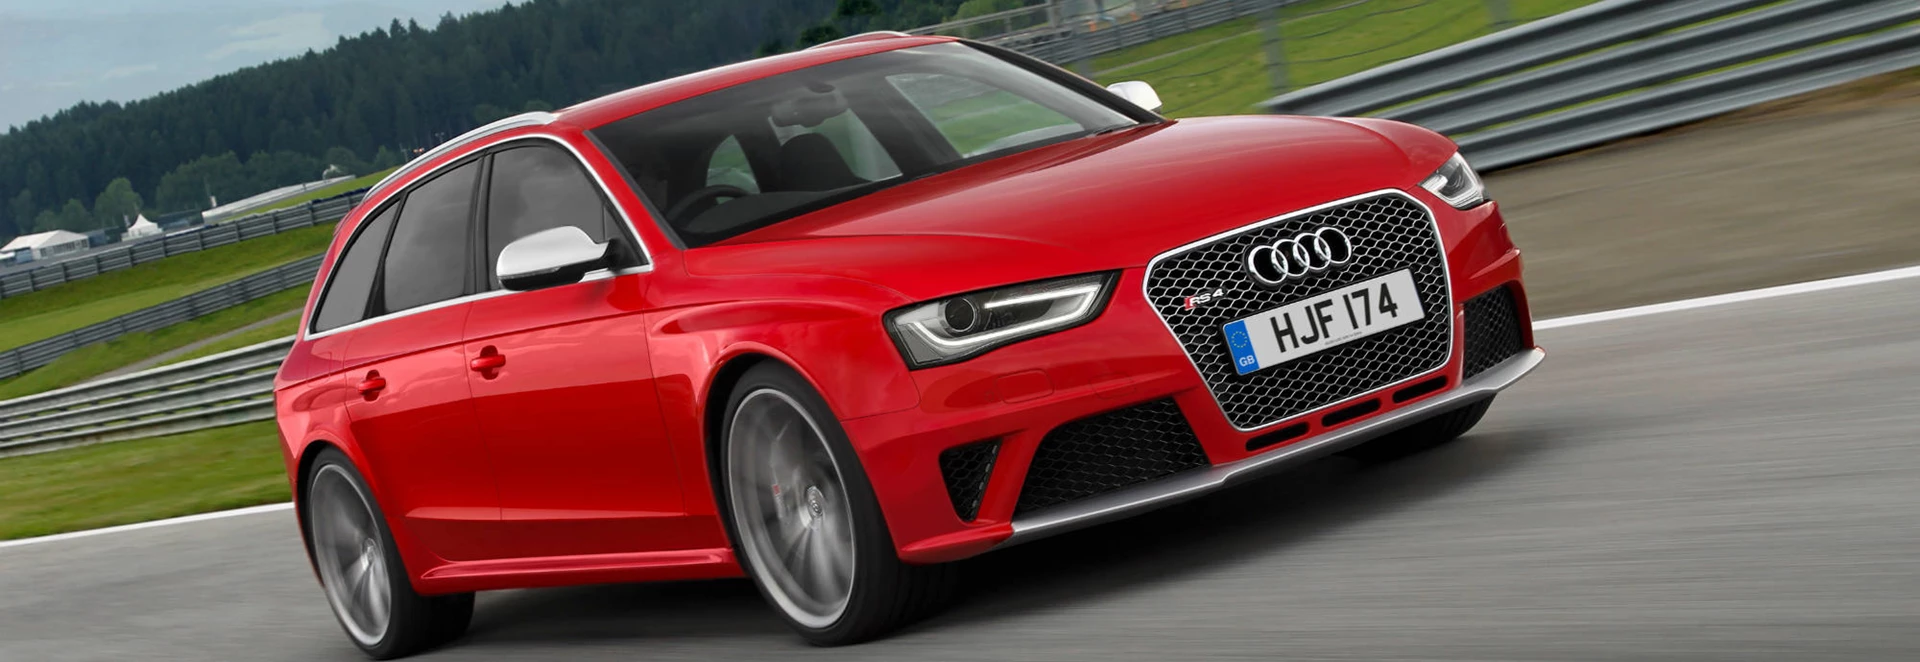 Audi RS 4 Avant estate review 